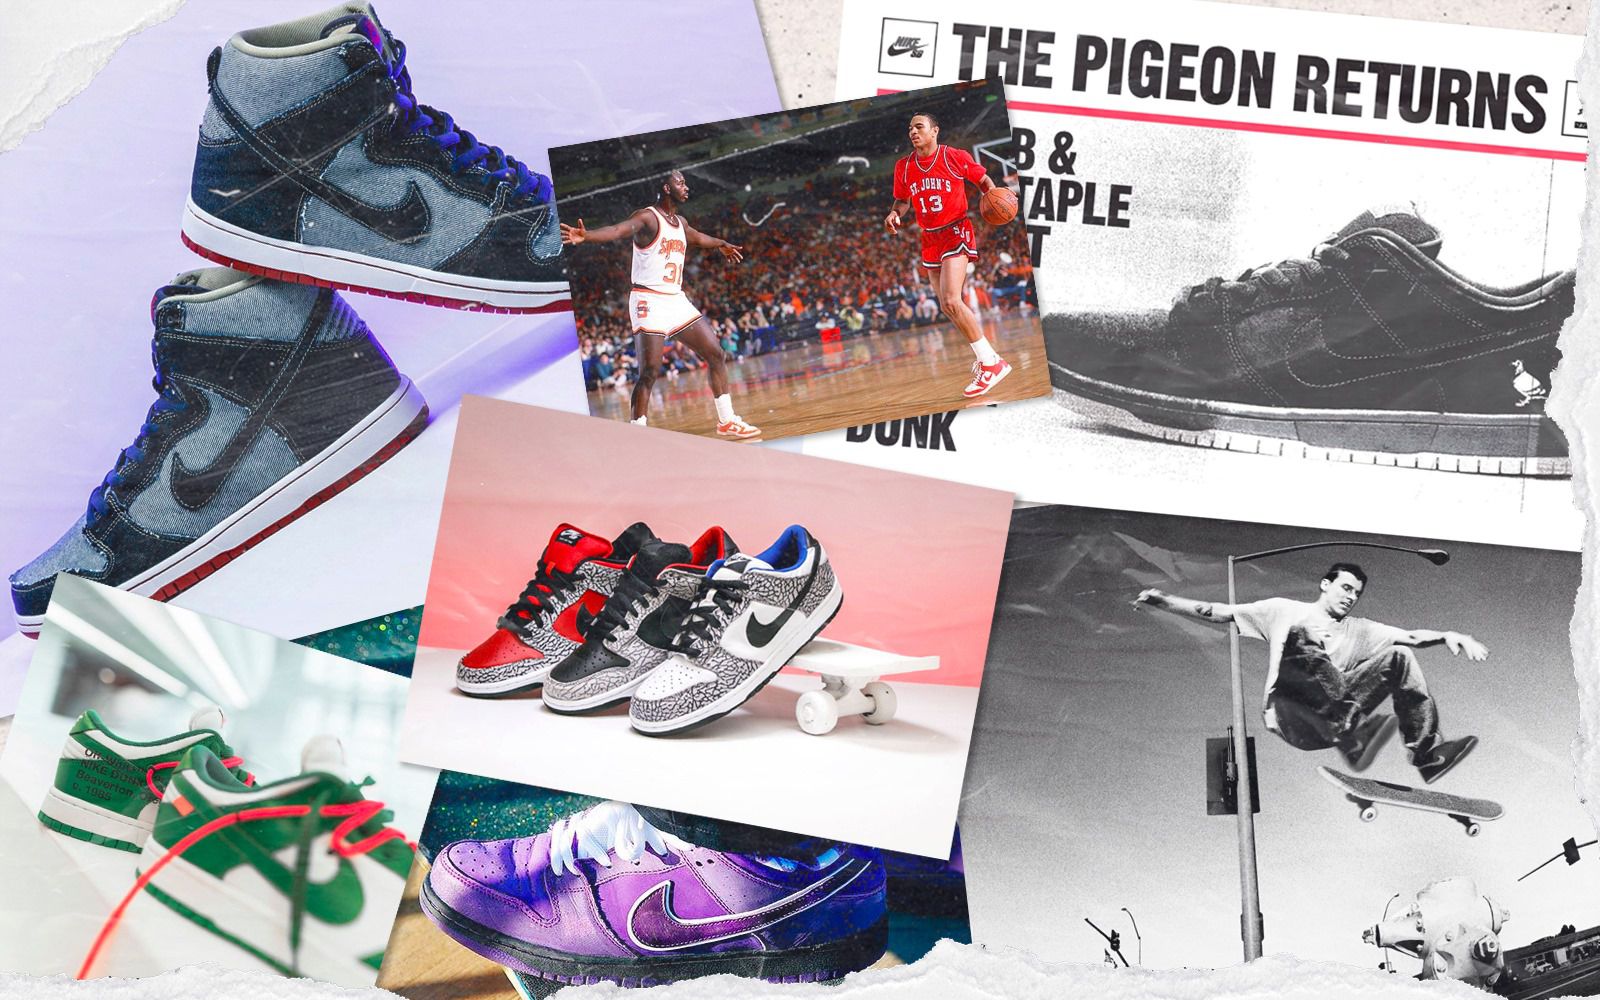 Vintage-Inspired Legacy Sneakers : Nike and Foot Locker, Inc